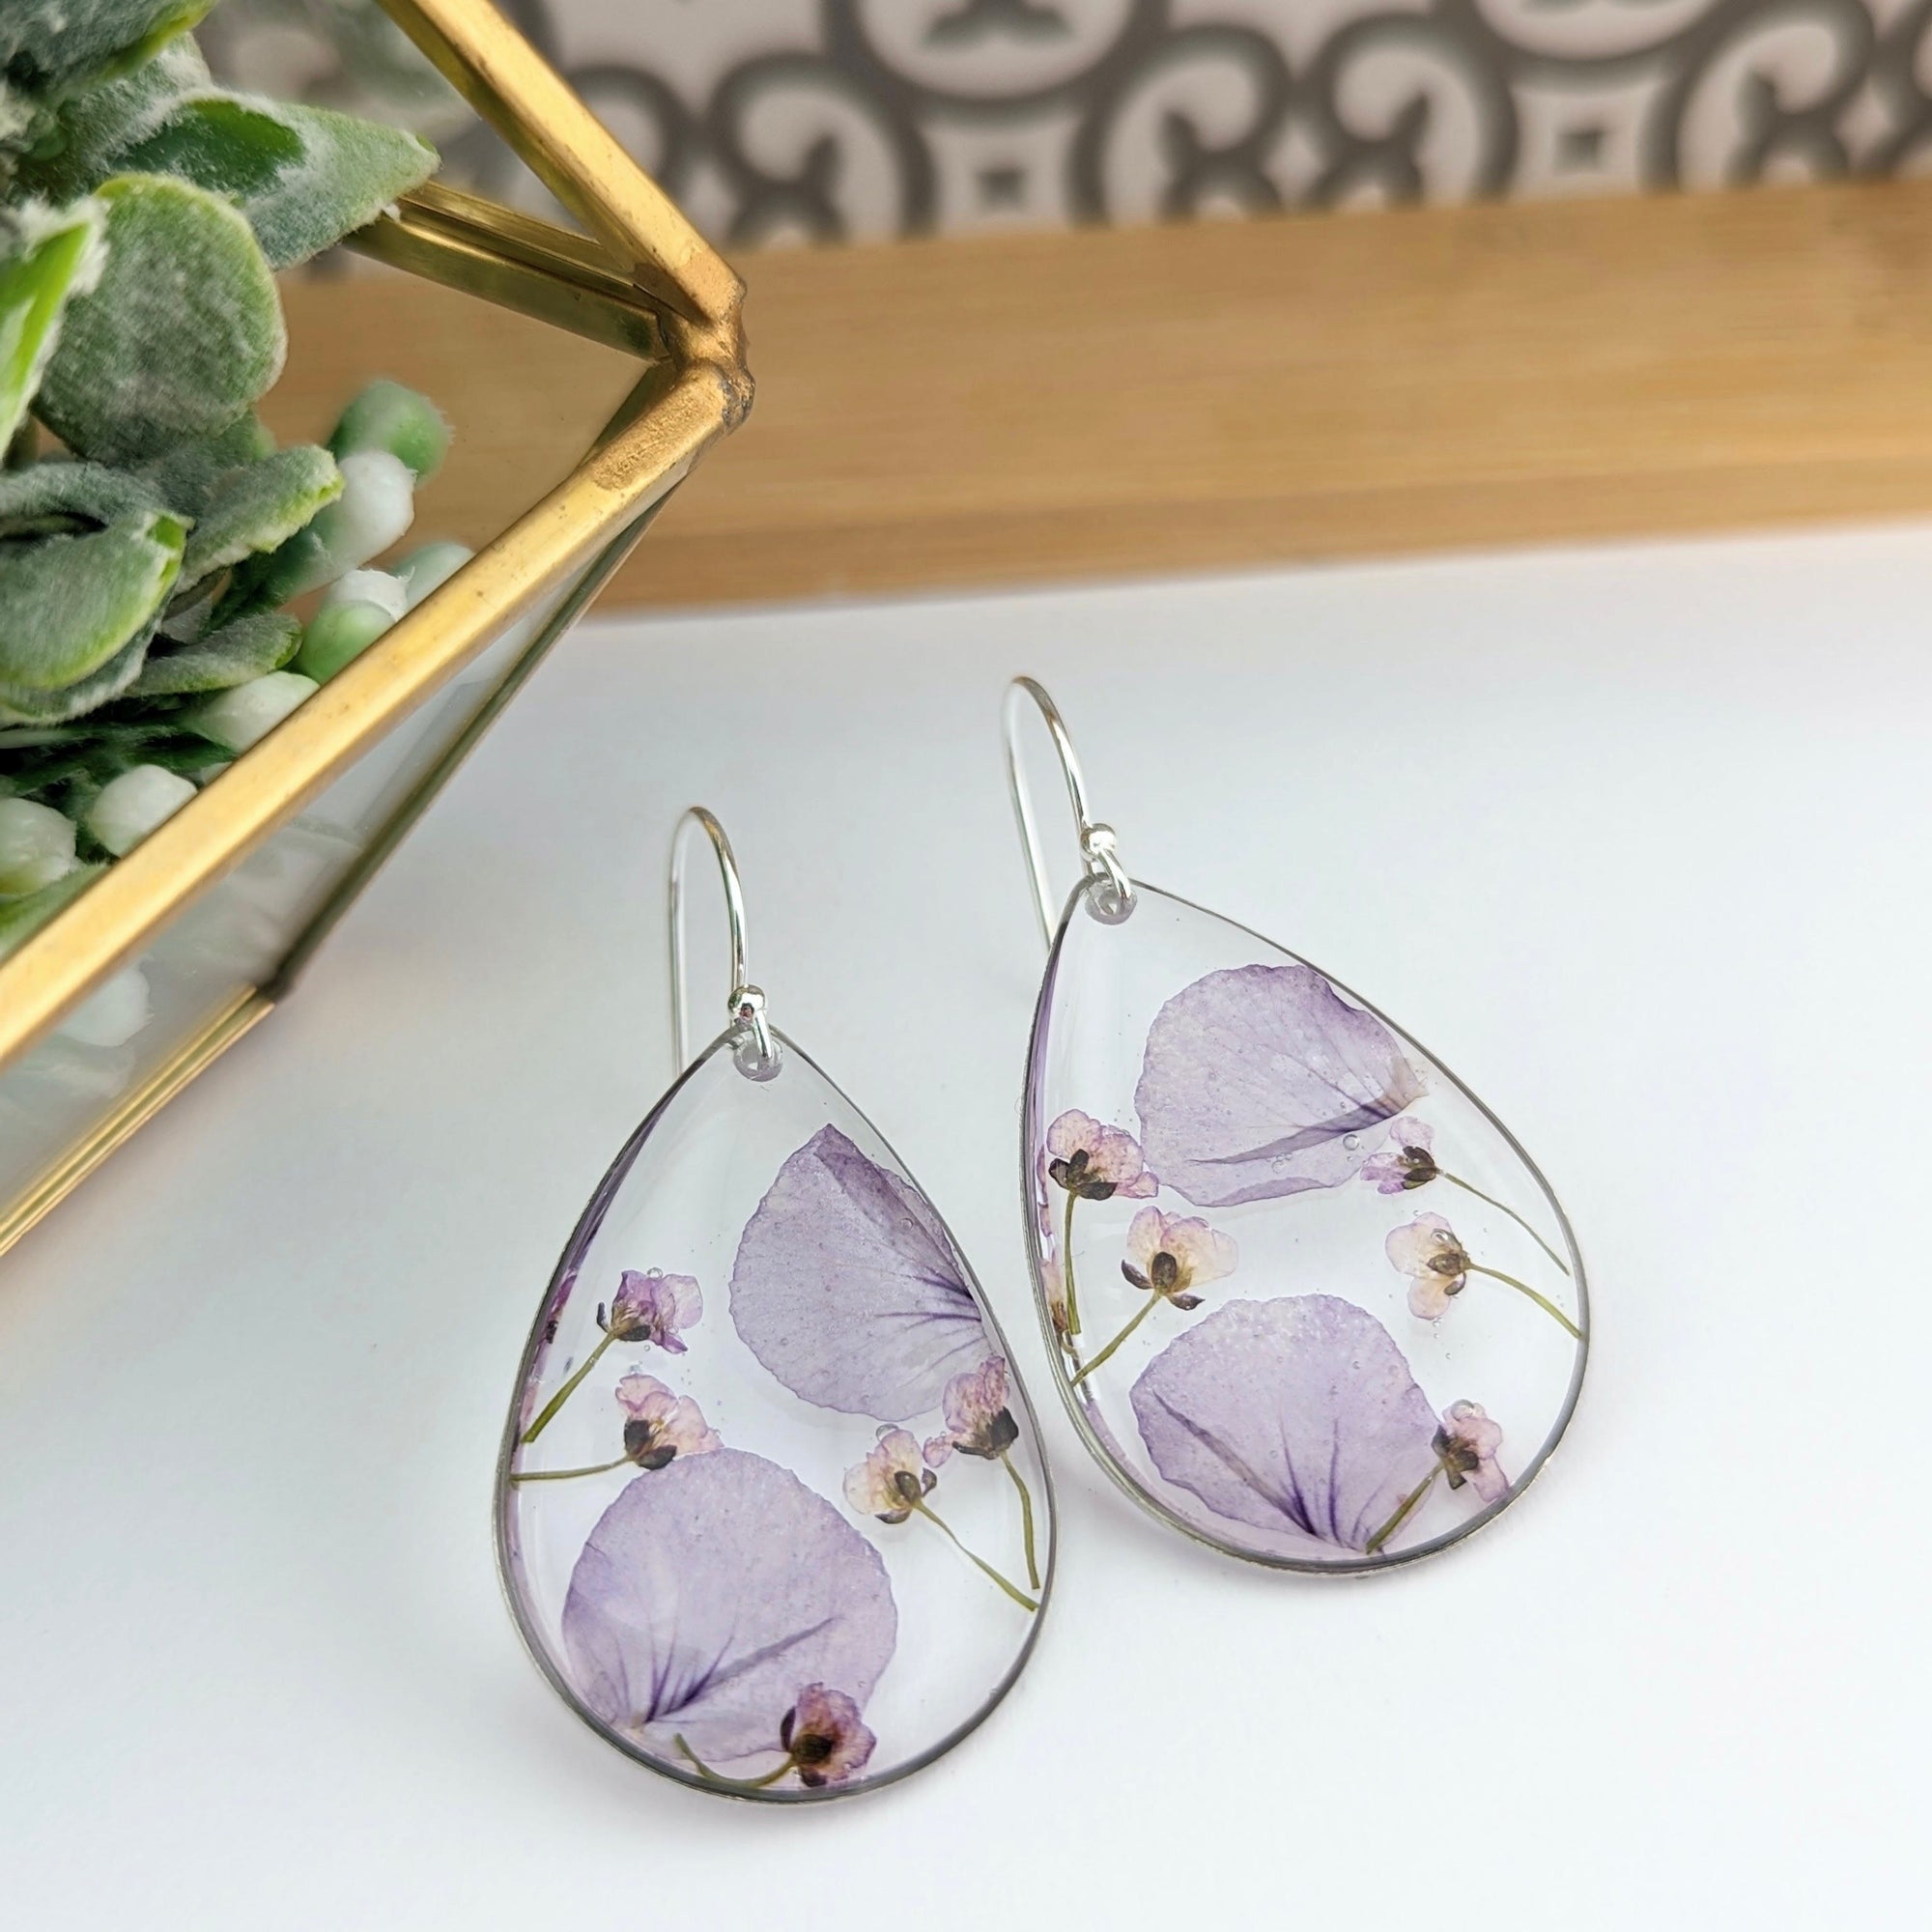 BubblePop | Handmade resin earrings with Pansies and Sweet Alyssum